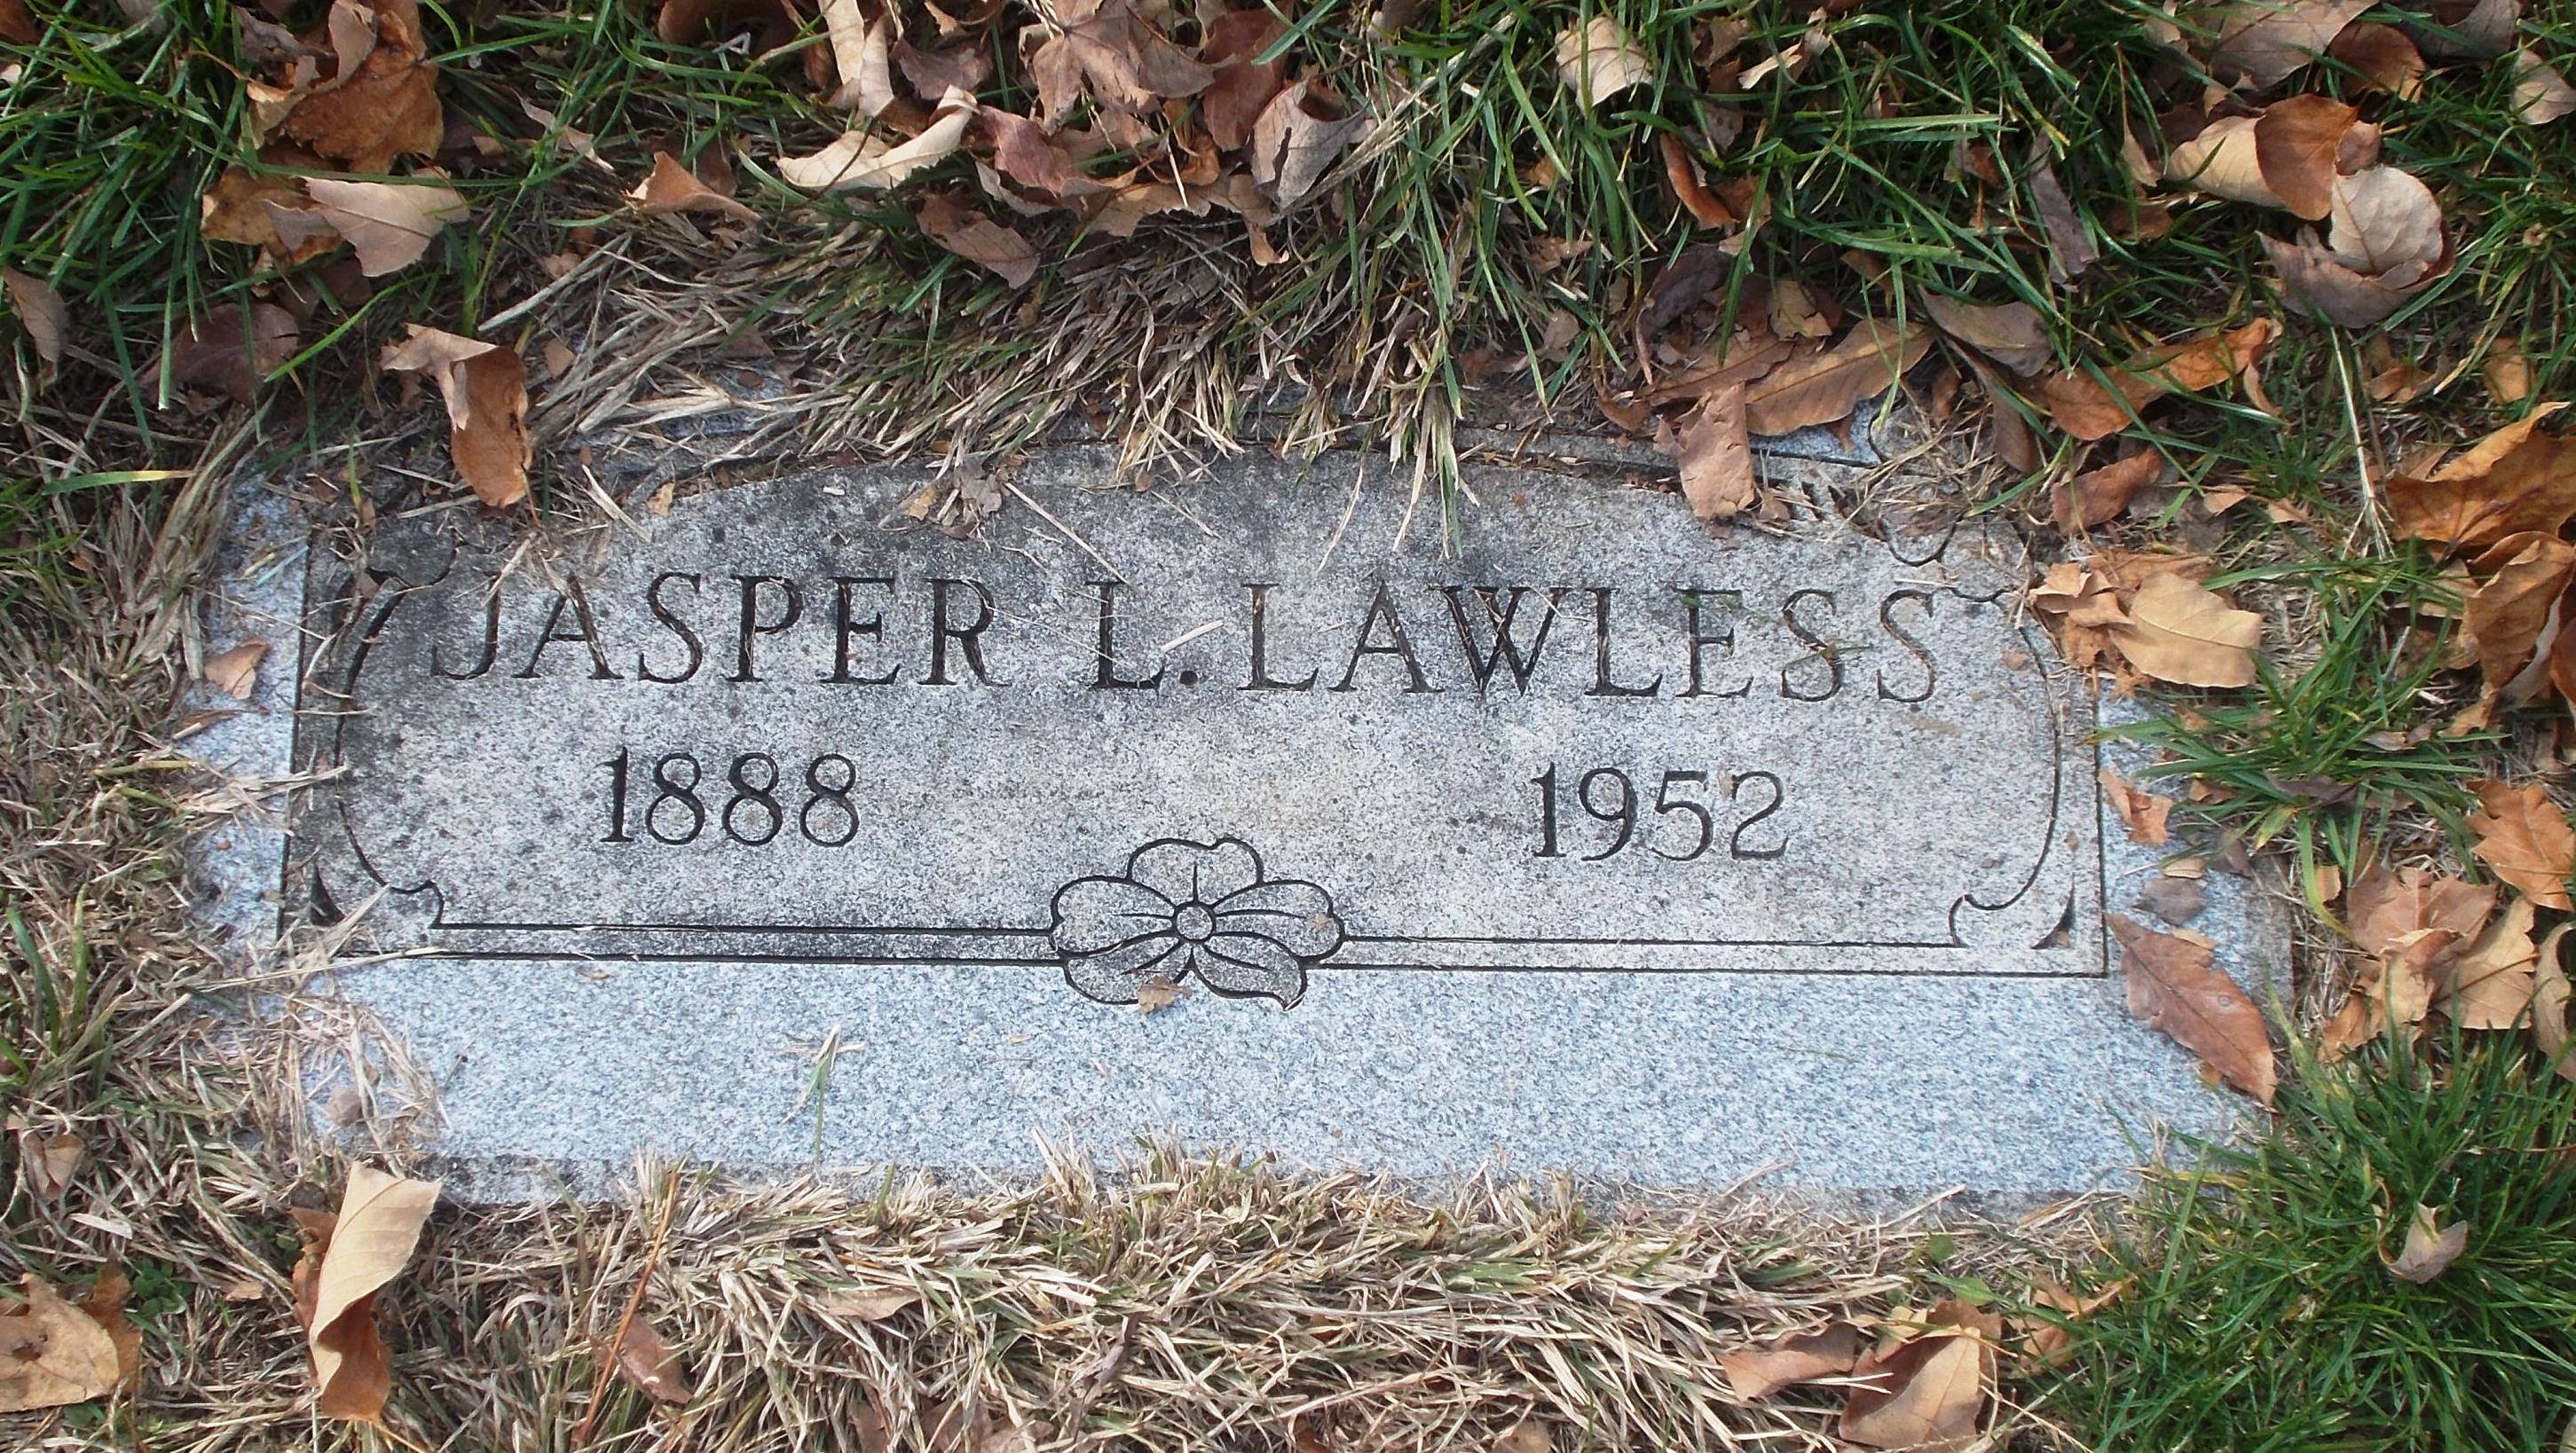 Jasper L Lawless